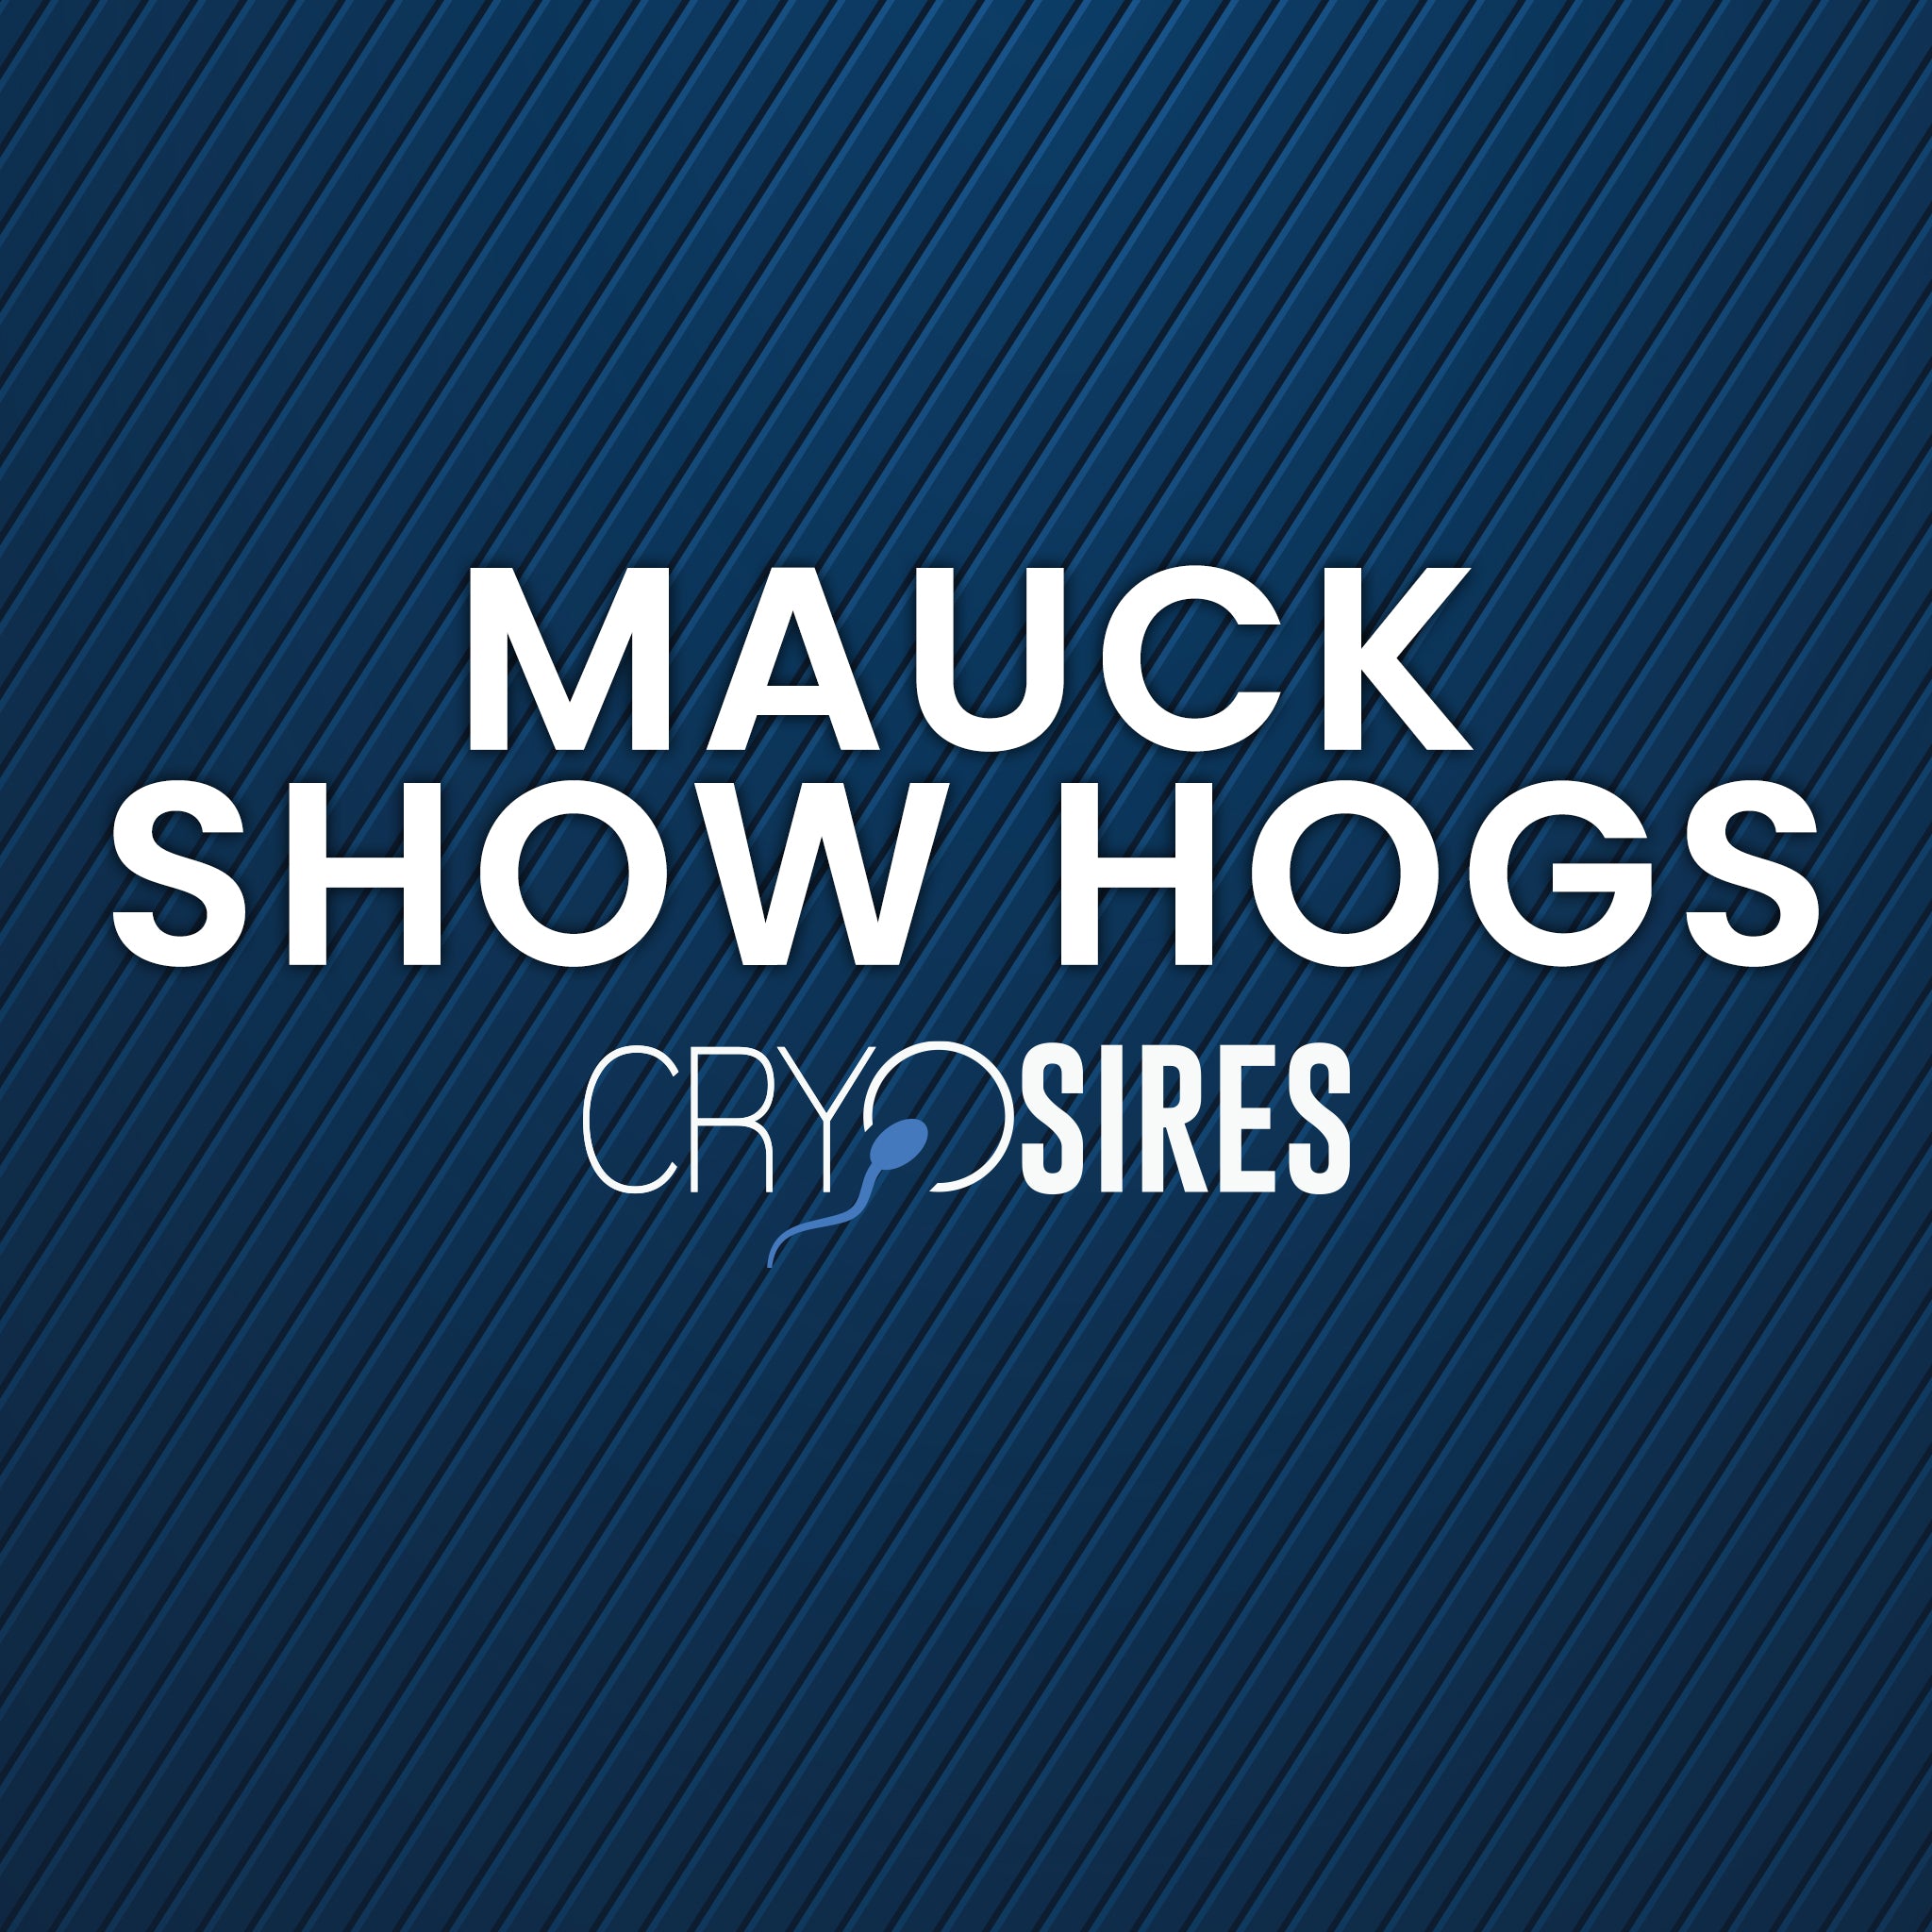 Mauck Show Hogs